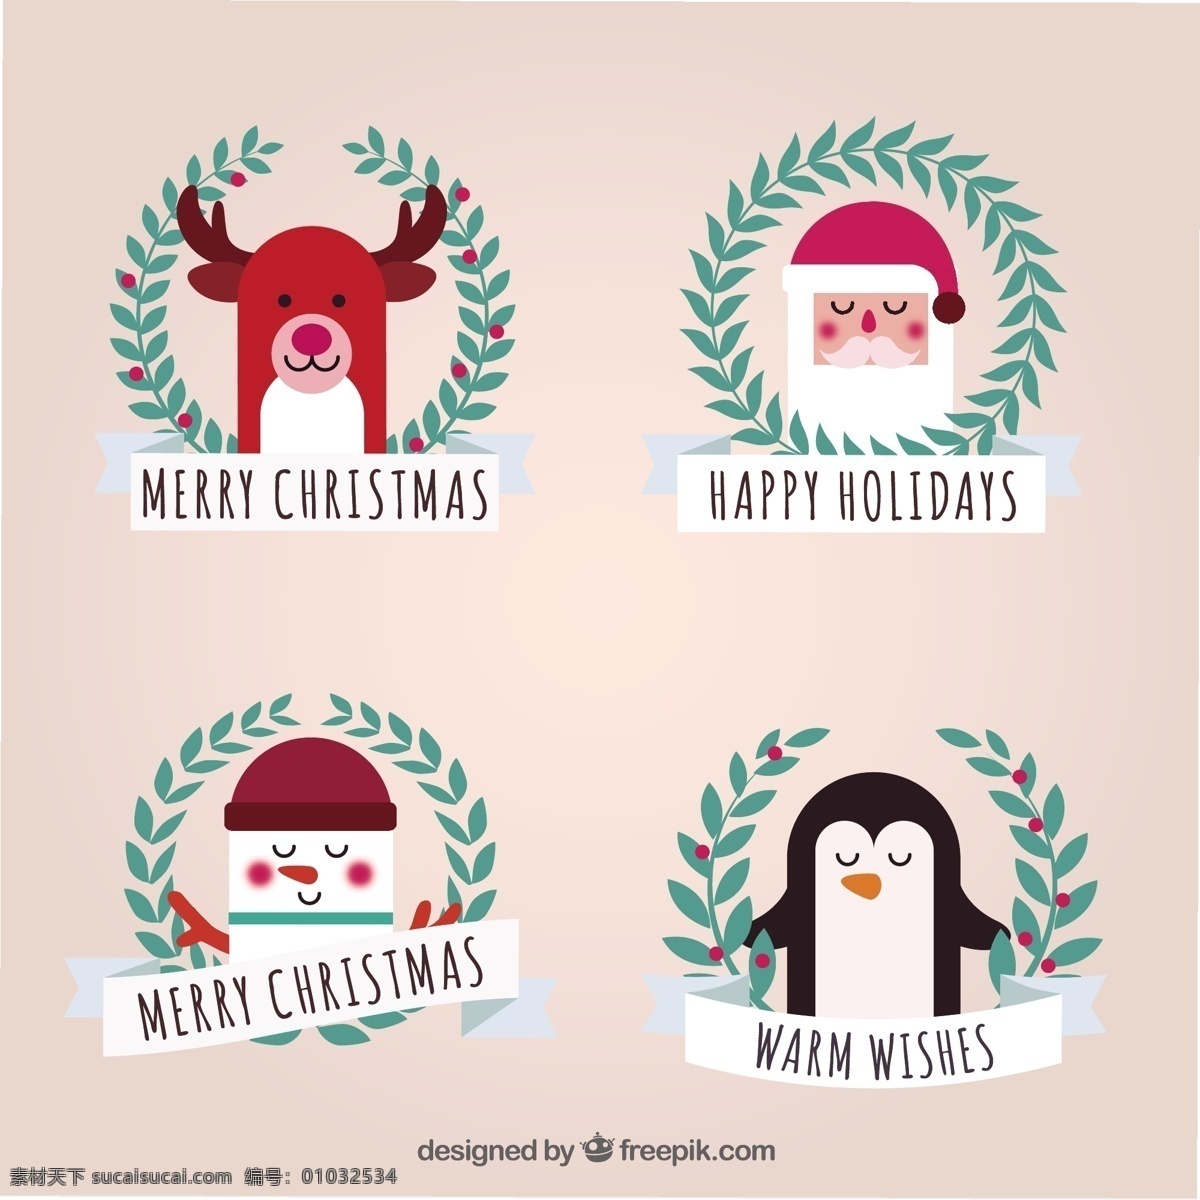 可爱 圣诞 人物 收藏 圣诞节 圣诞快乐 冬天快乐 圣诞老人 克劳斯 性格可爱 庆典 节日 雪人 驯鹿 企鹅 节日快乐 可爱的人物 季节 白色